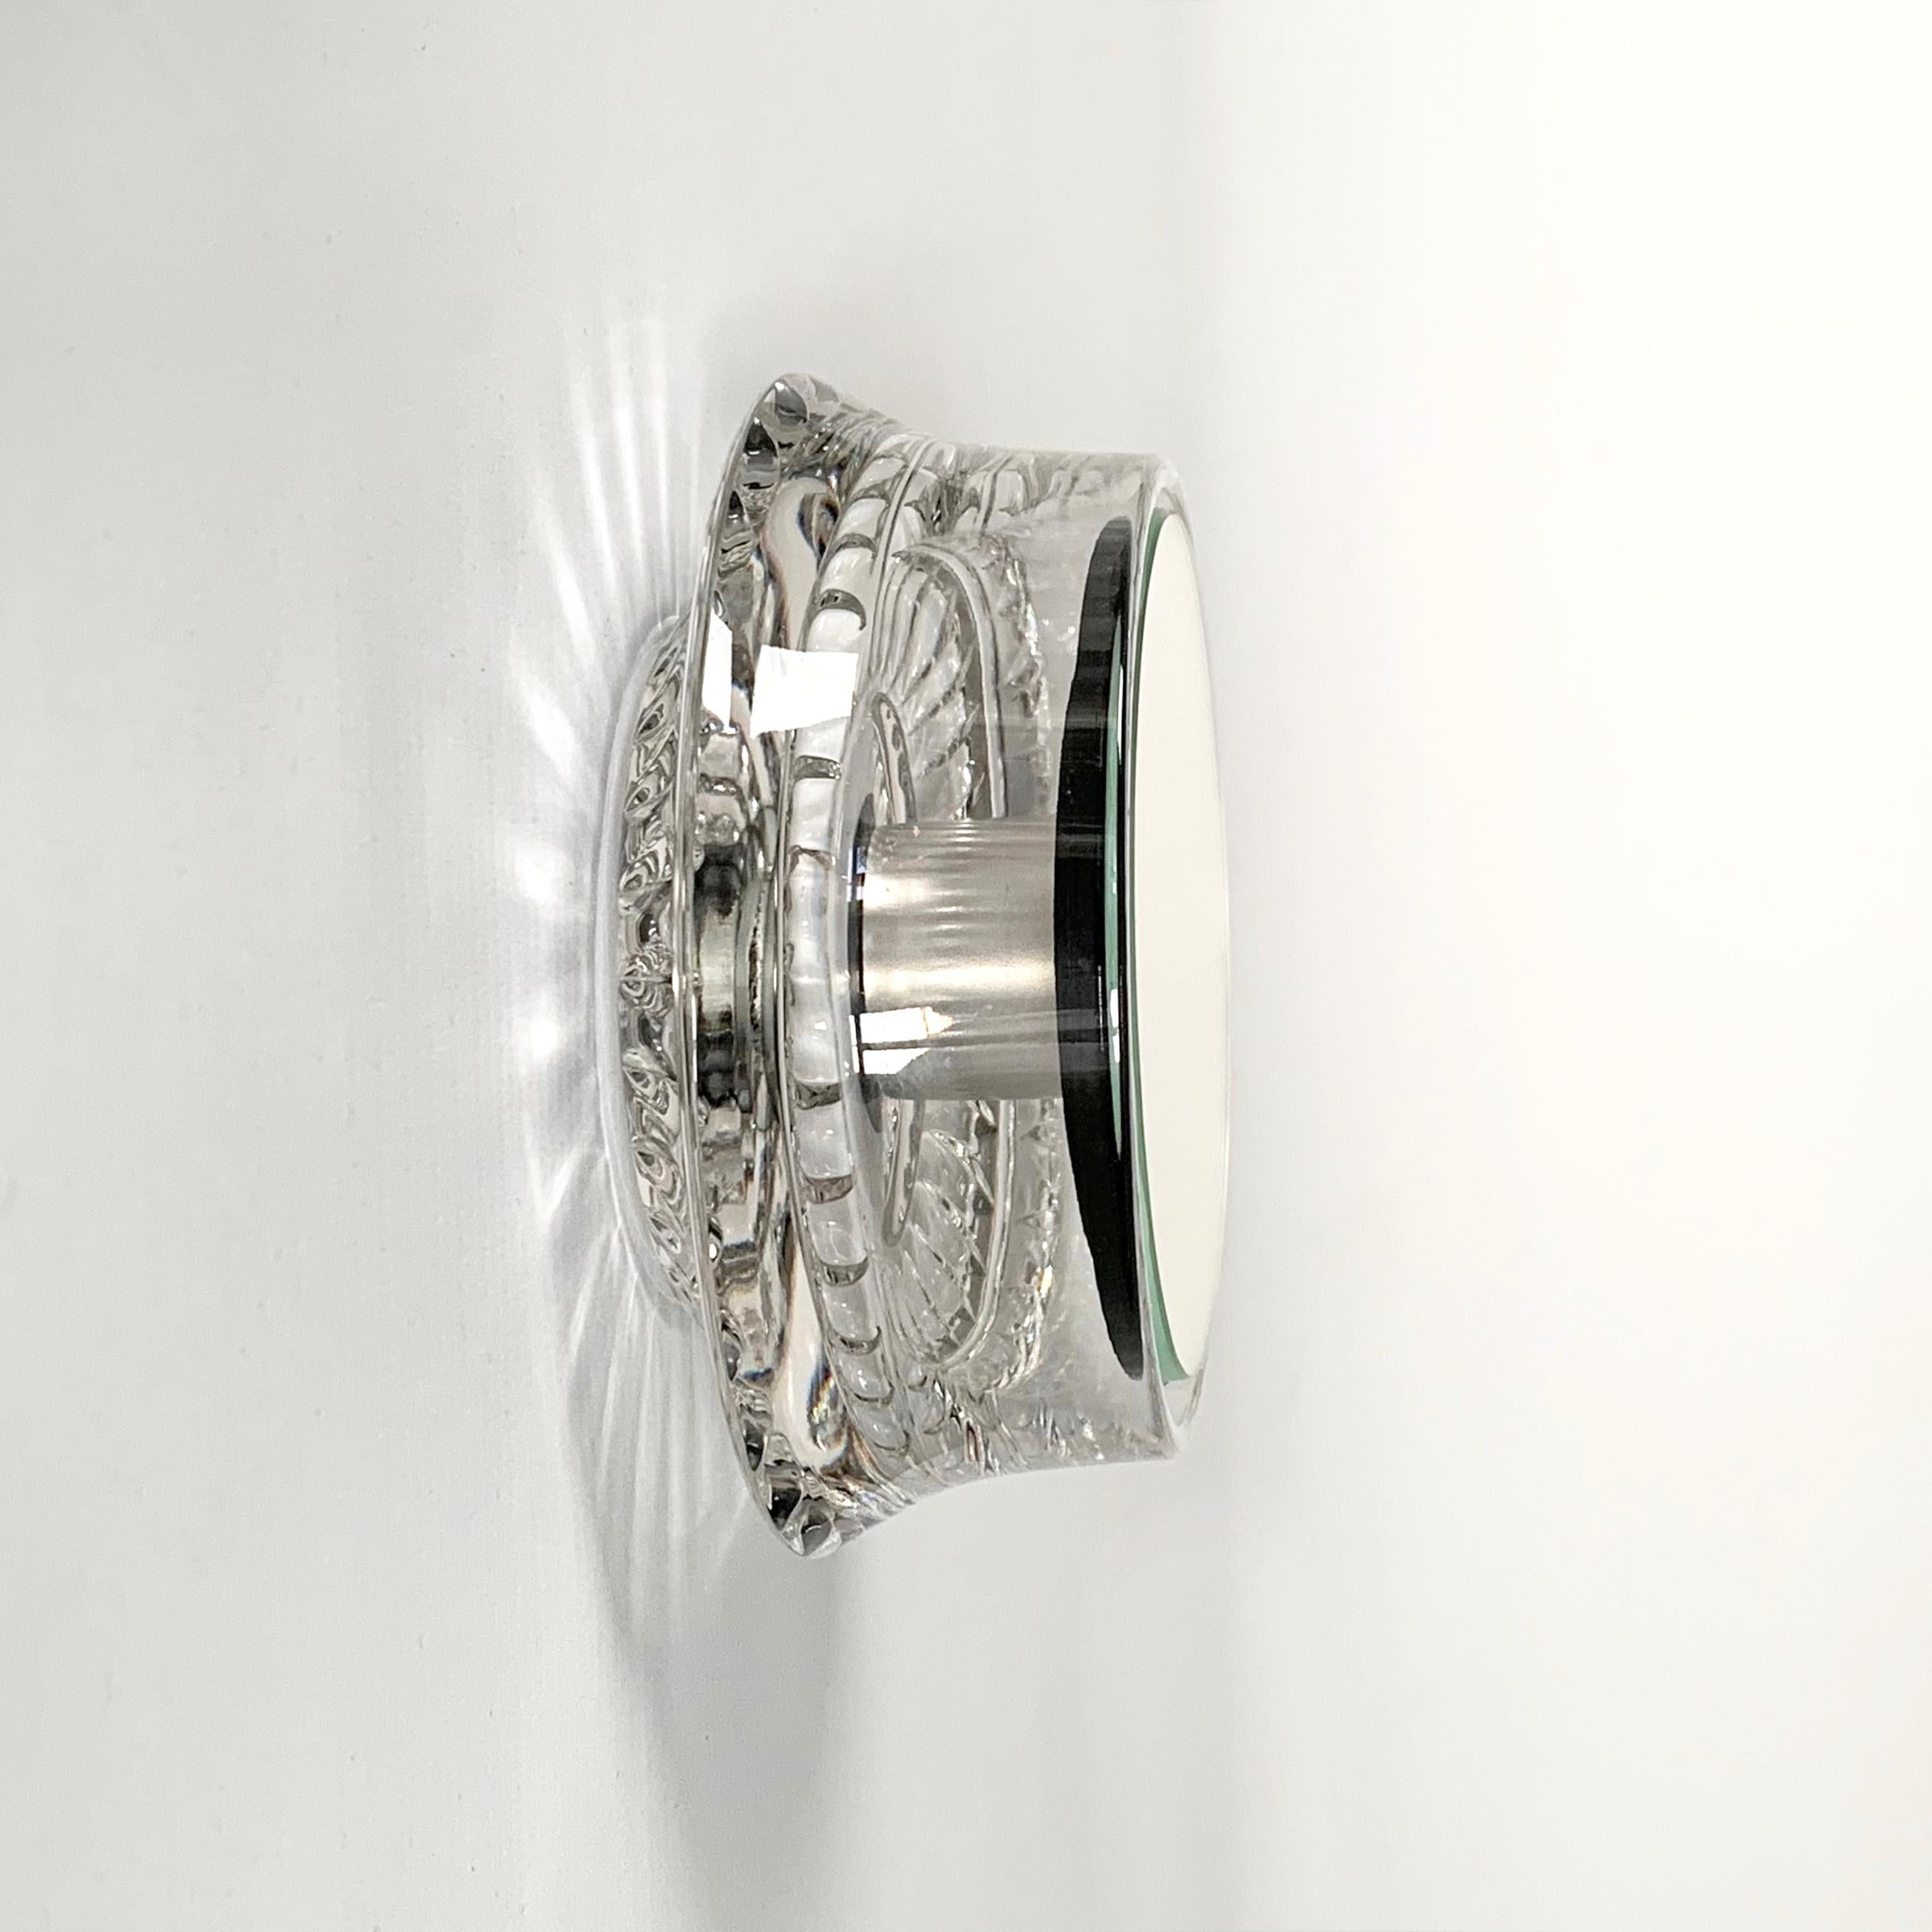 Miroirs muraux - By, fabriqués à partir de bols en verre vintage :
Bols et miroirs en verre flottant - construction invisible
Le bol en verre vintage se fixe facilement et solidement au mur. Un trou a été percé dans le bol en verre et un manchon